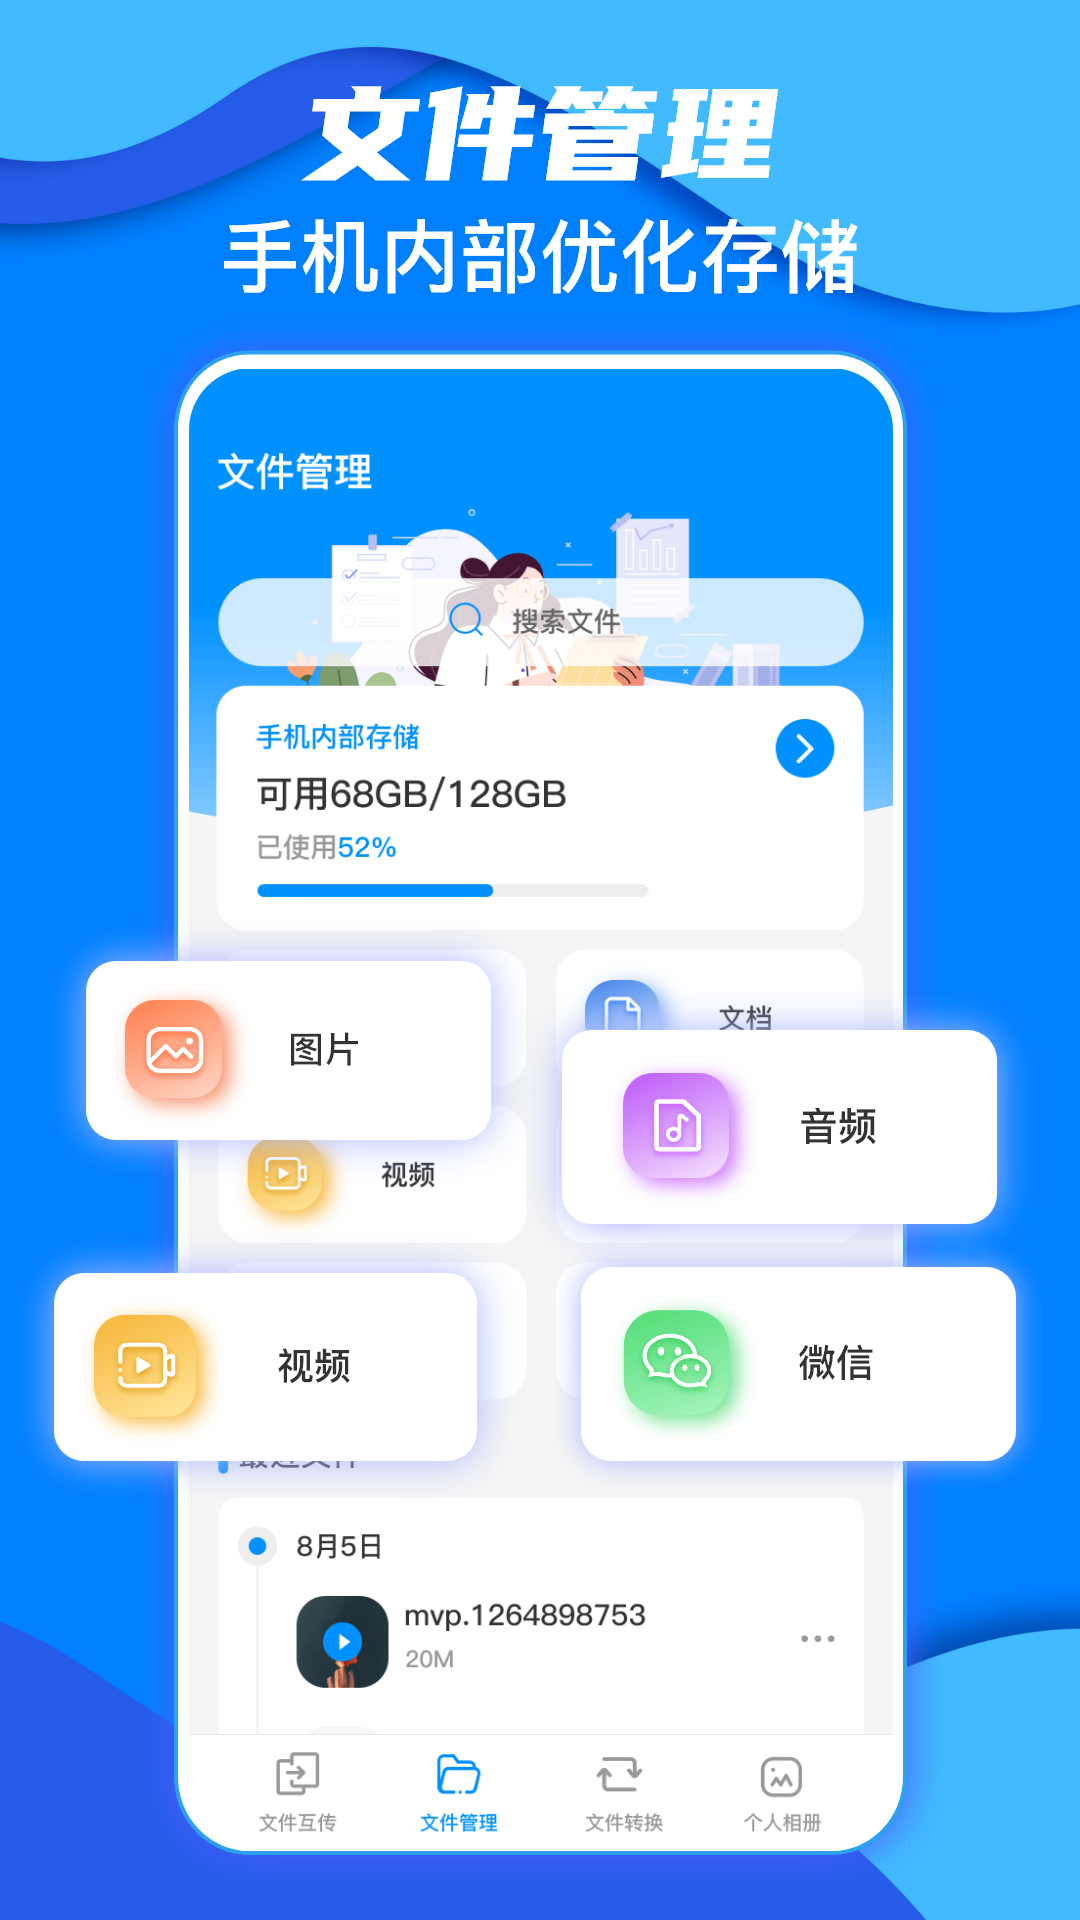 鹏成换机助手app下载,鹏成换机助手app安卓版 v3.3.0904